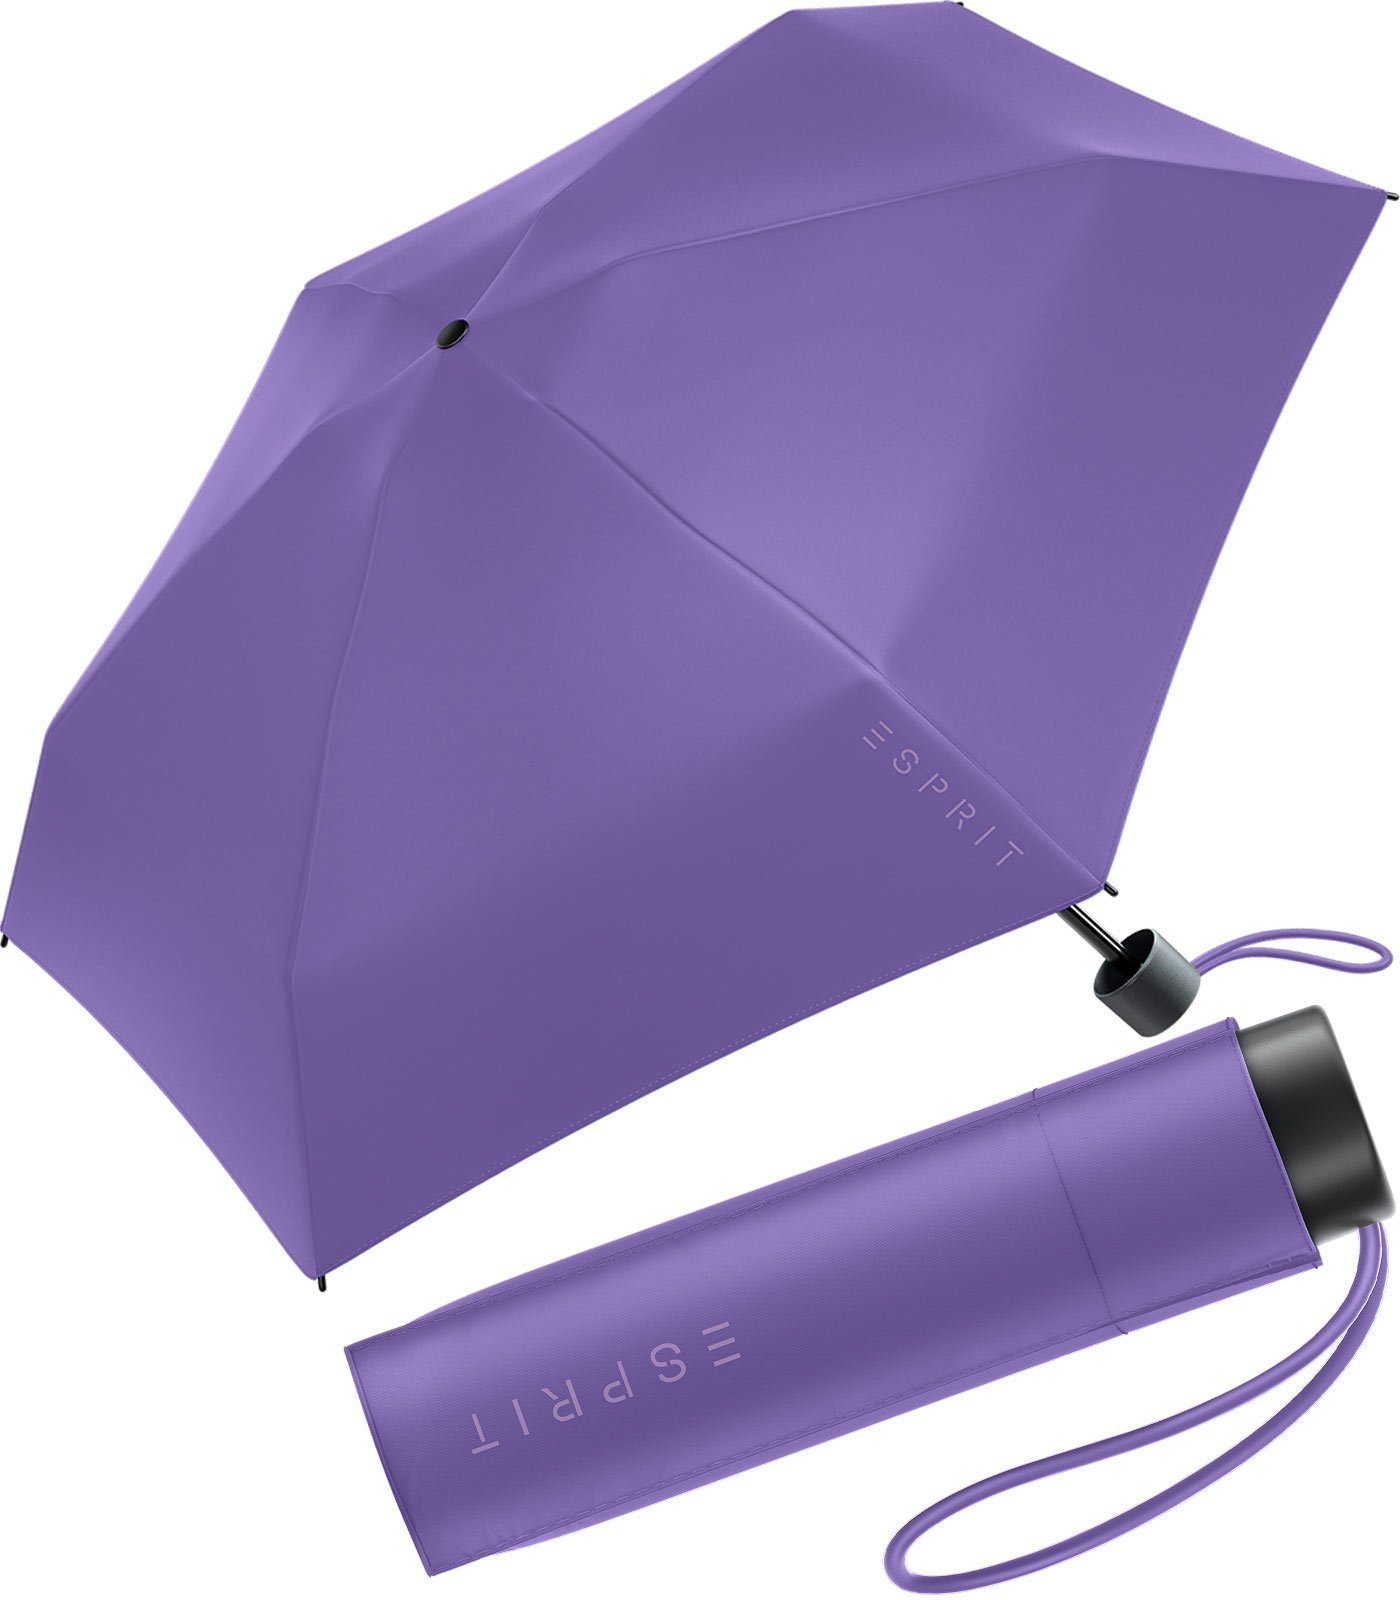 Esprit Langregenschirm Damen Super Mini Regenschirm Petito HW 2023, in den neuen Trendfarben, deep lavender lila